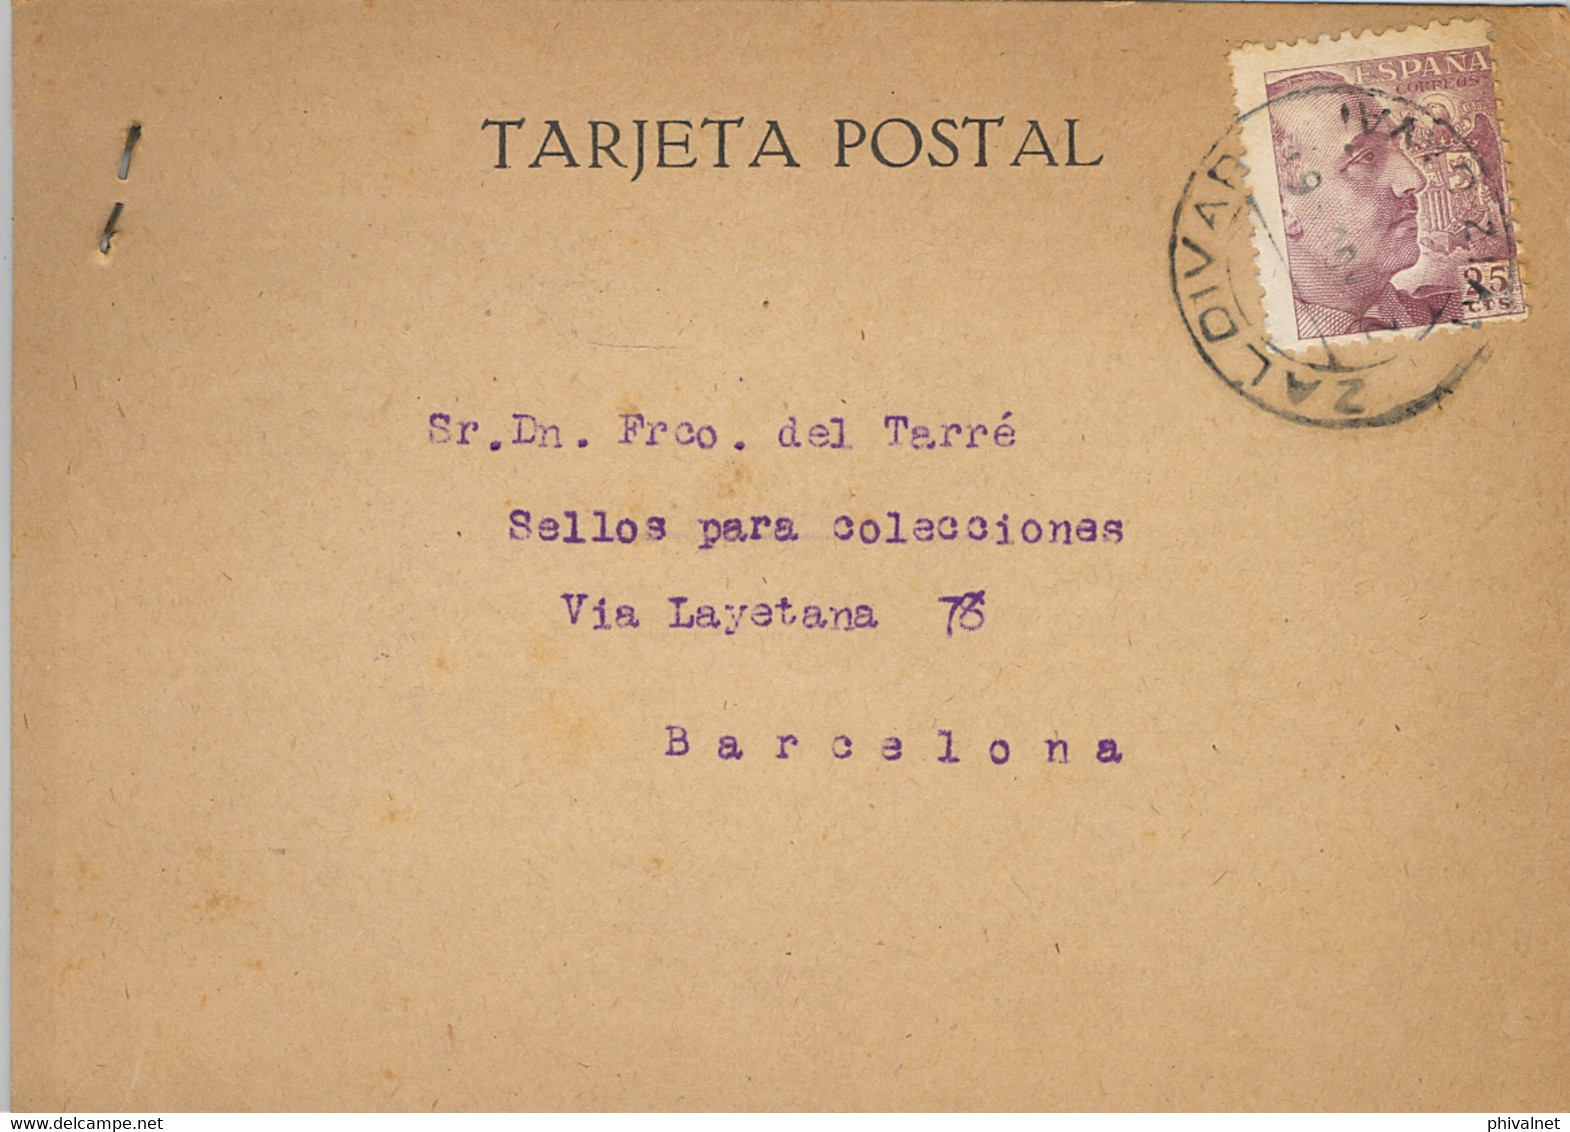 1946 VIZCAYA , T.P. CIRCULADA ENTRE ZALDIVAR Y BARCELONA , DIRIGIDA A FRANCISCO DEL TARRÉ - Storia Postale